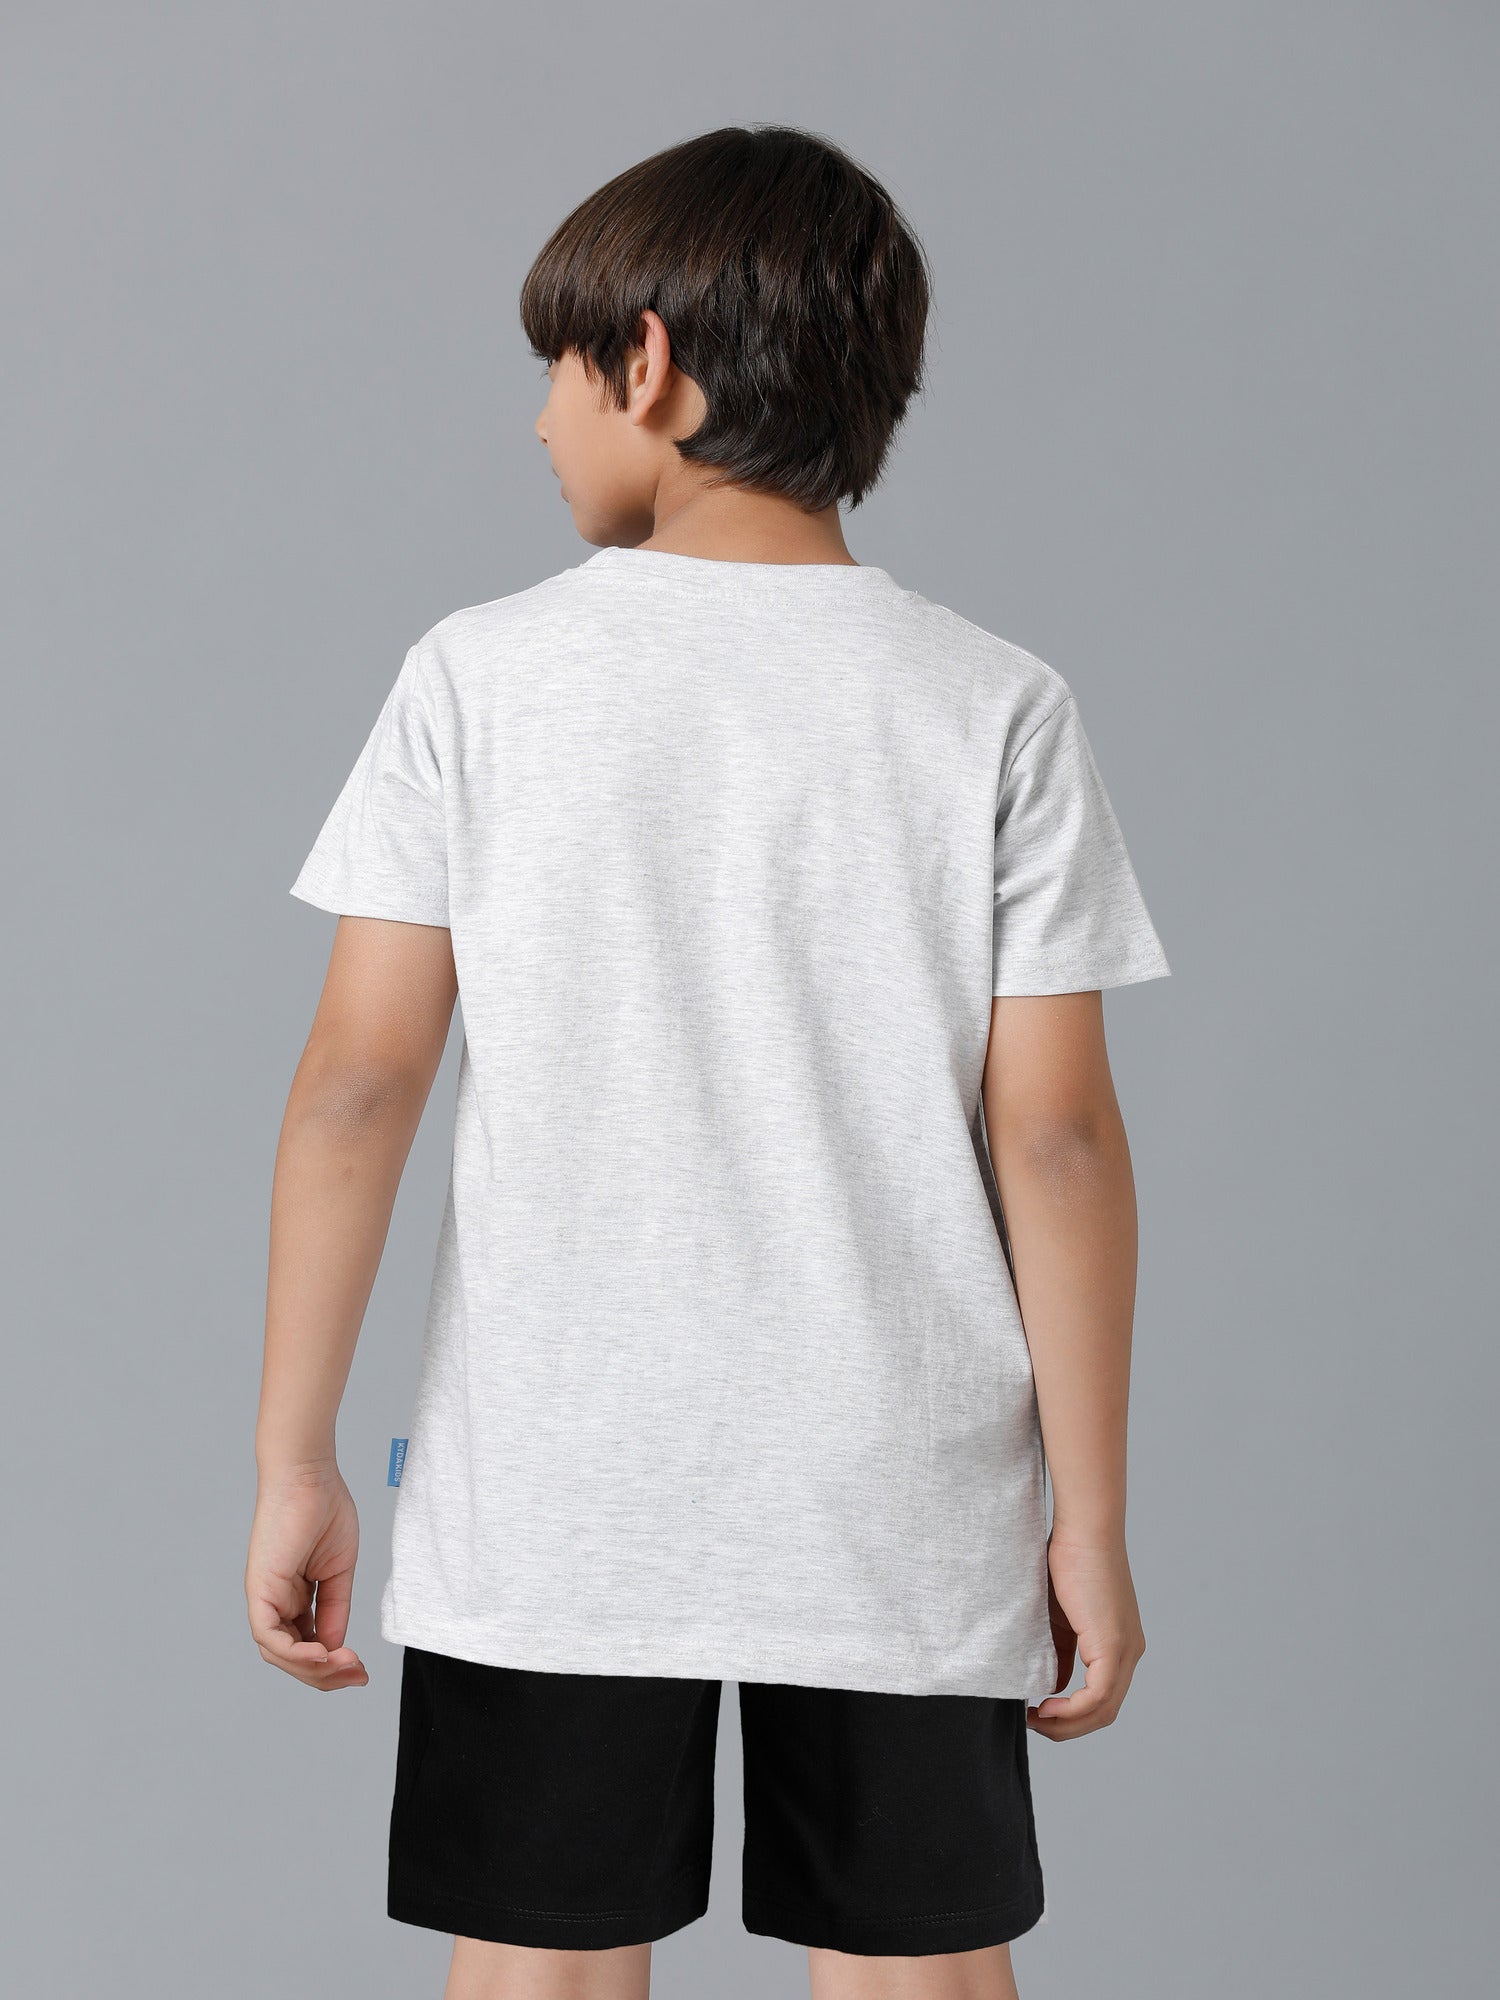 Boys Clothing Set T-shirt & Shorts - Melange 1